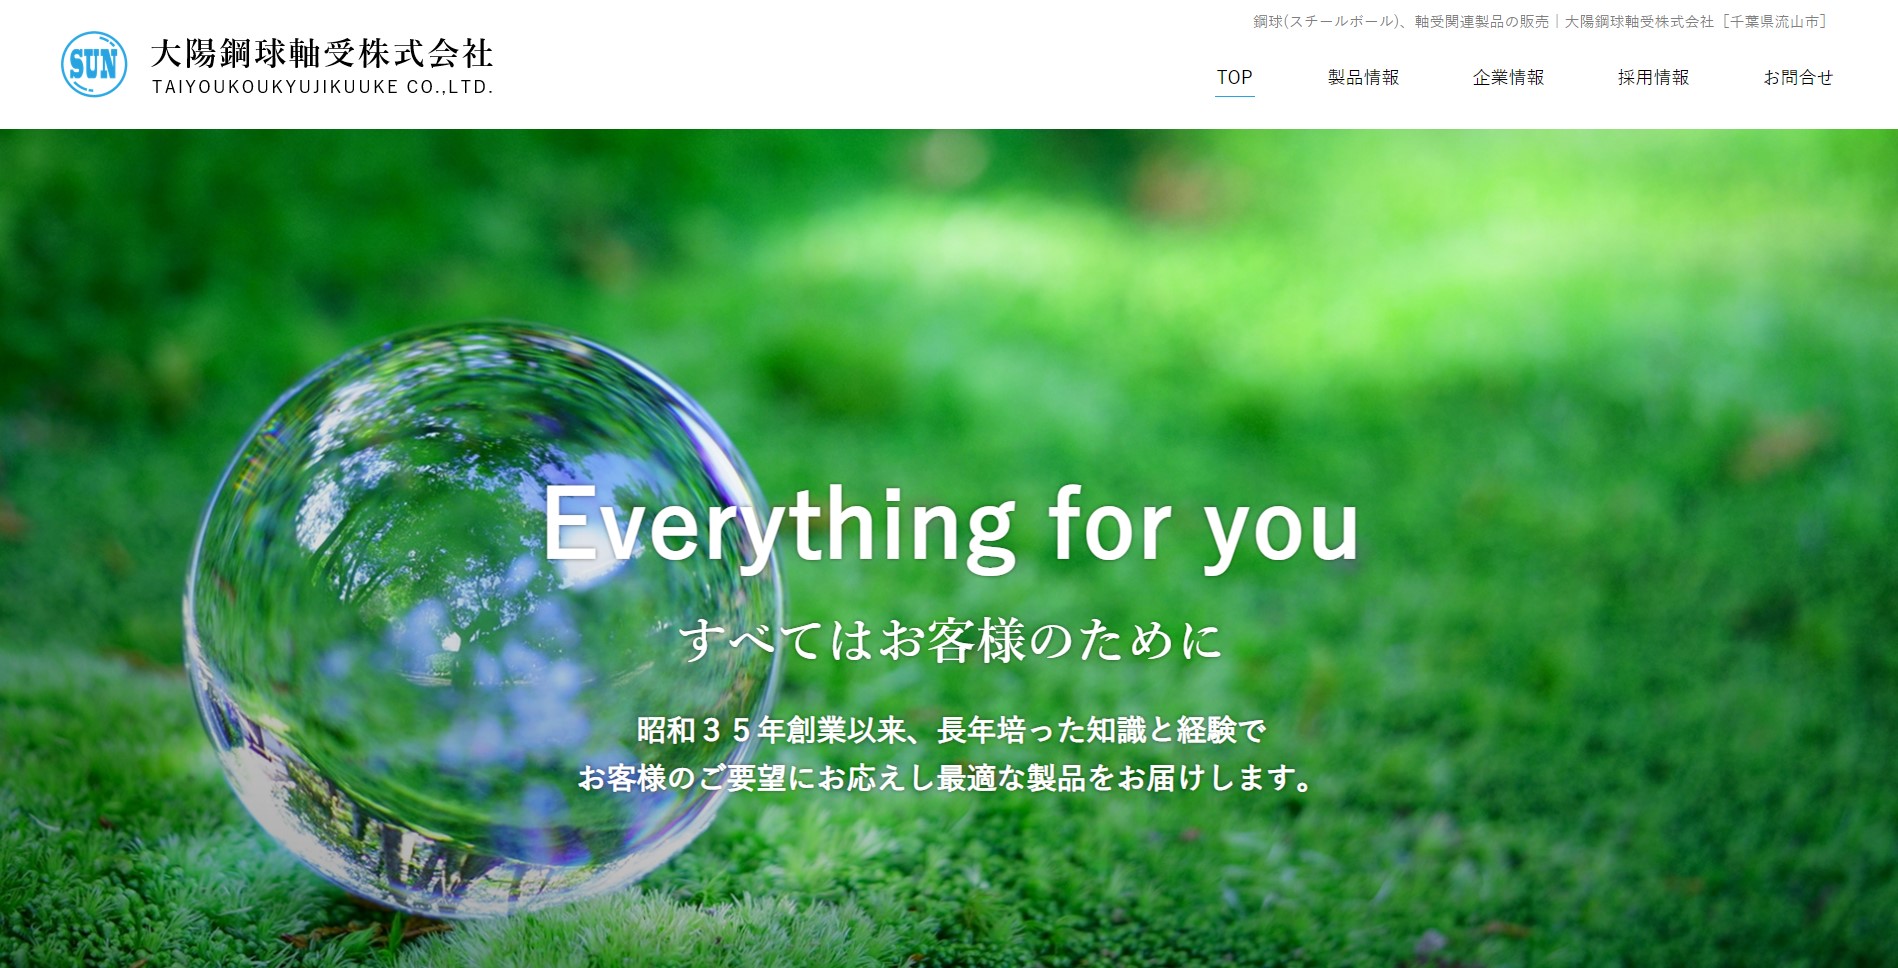 大陽鋼球軸受株式会社様のホームページ画像